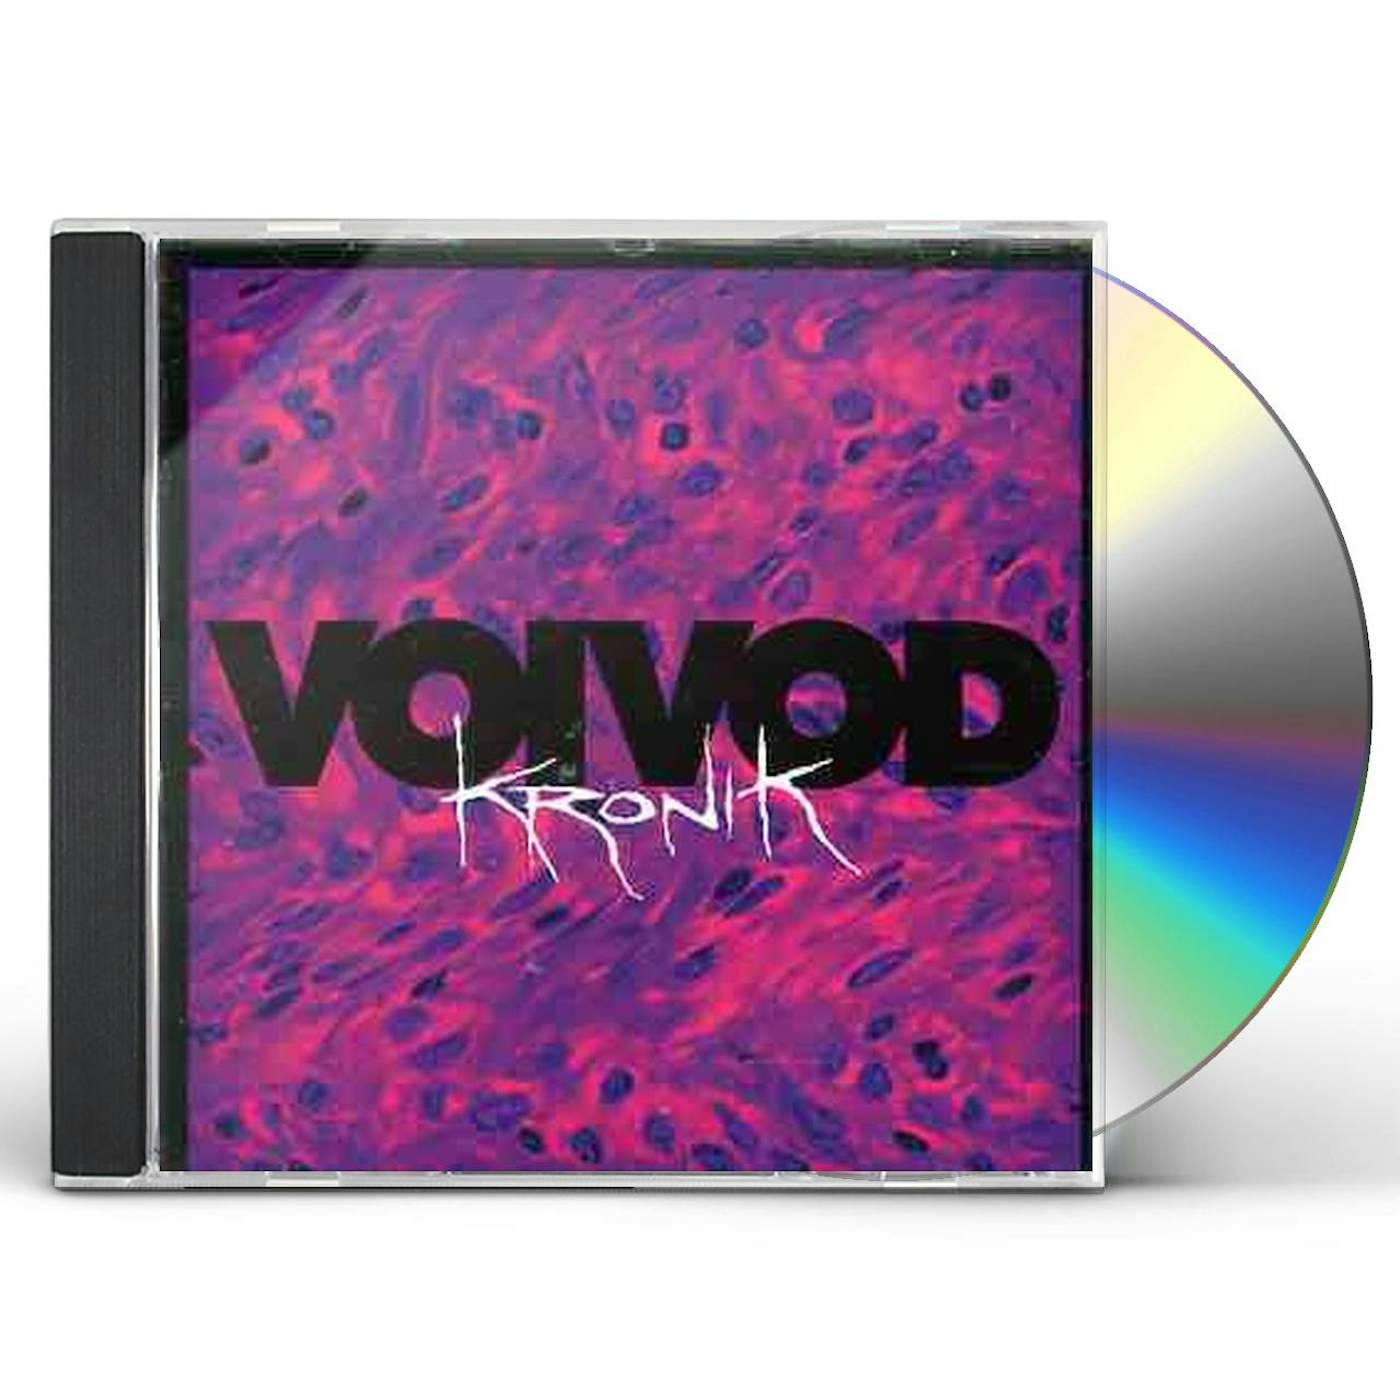 Voivod KRONIK CD